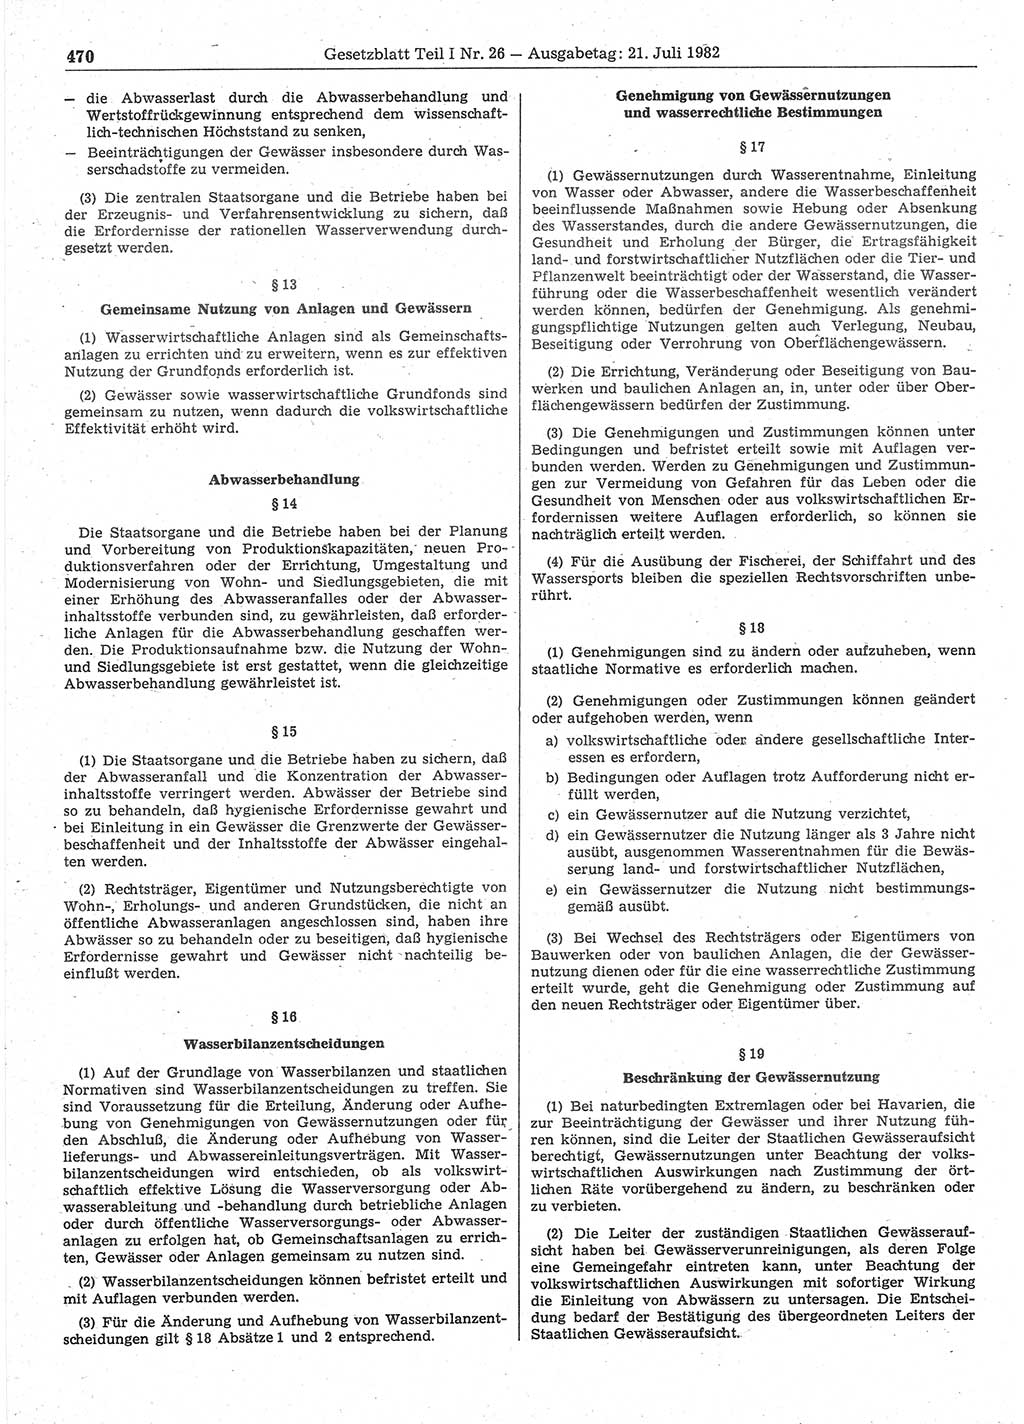 Gesetzblatt (GBl.) der Deutschen Demokratischen Republik (DDR) Teil Ⅰ 1982, Seite 470 (GBl. DDR Ⅰ 1982, S. 470)